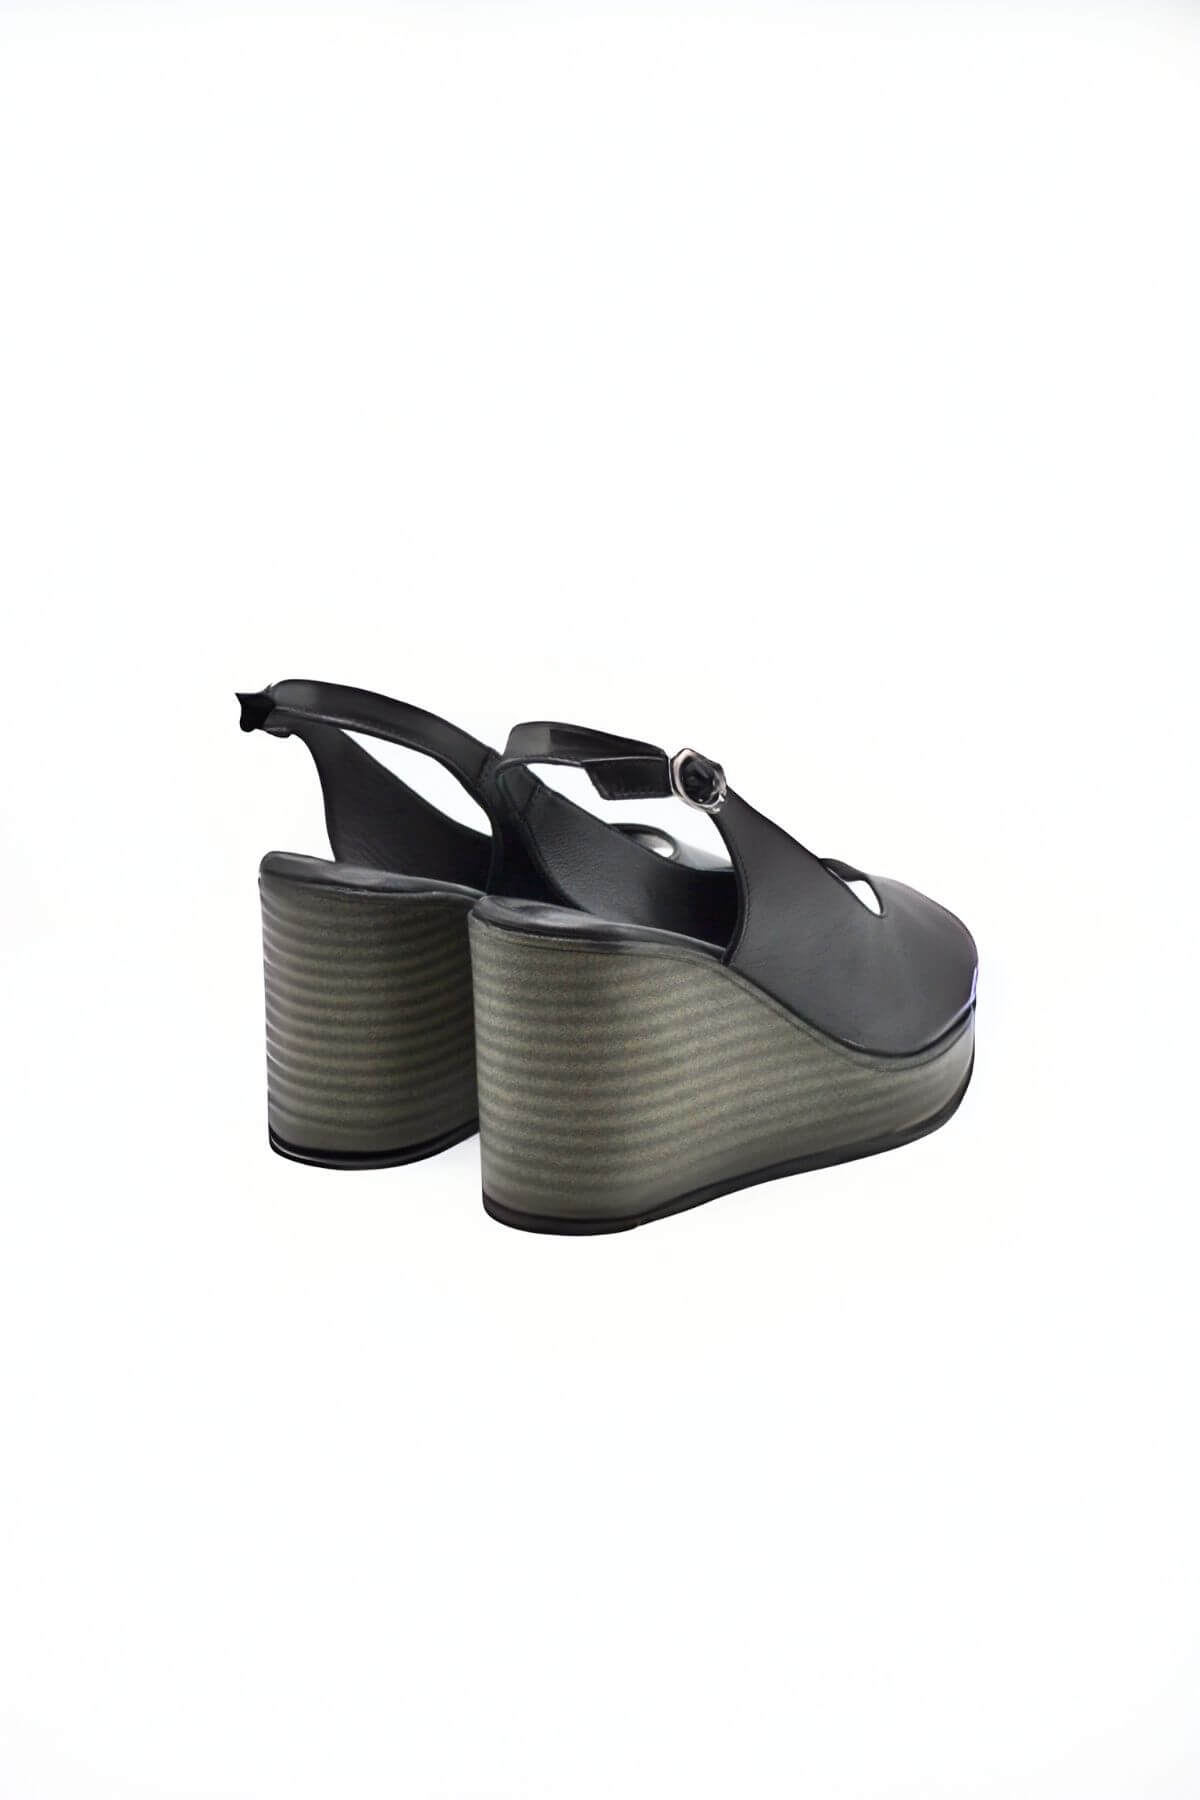 Kadın Dolgu Topuk Deri Sandalet Siyah 2310802Y - Thumbnail